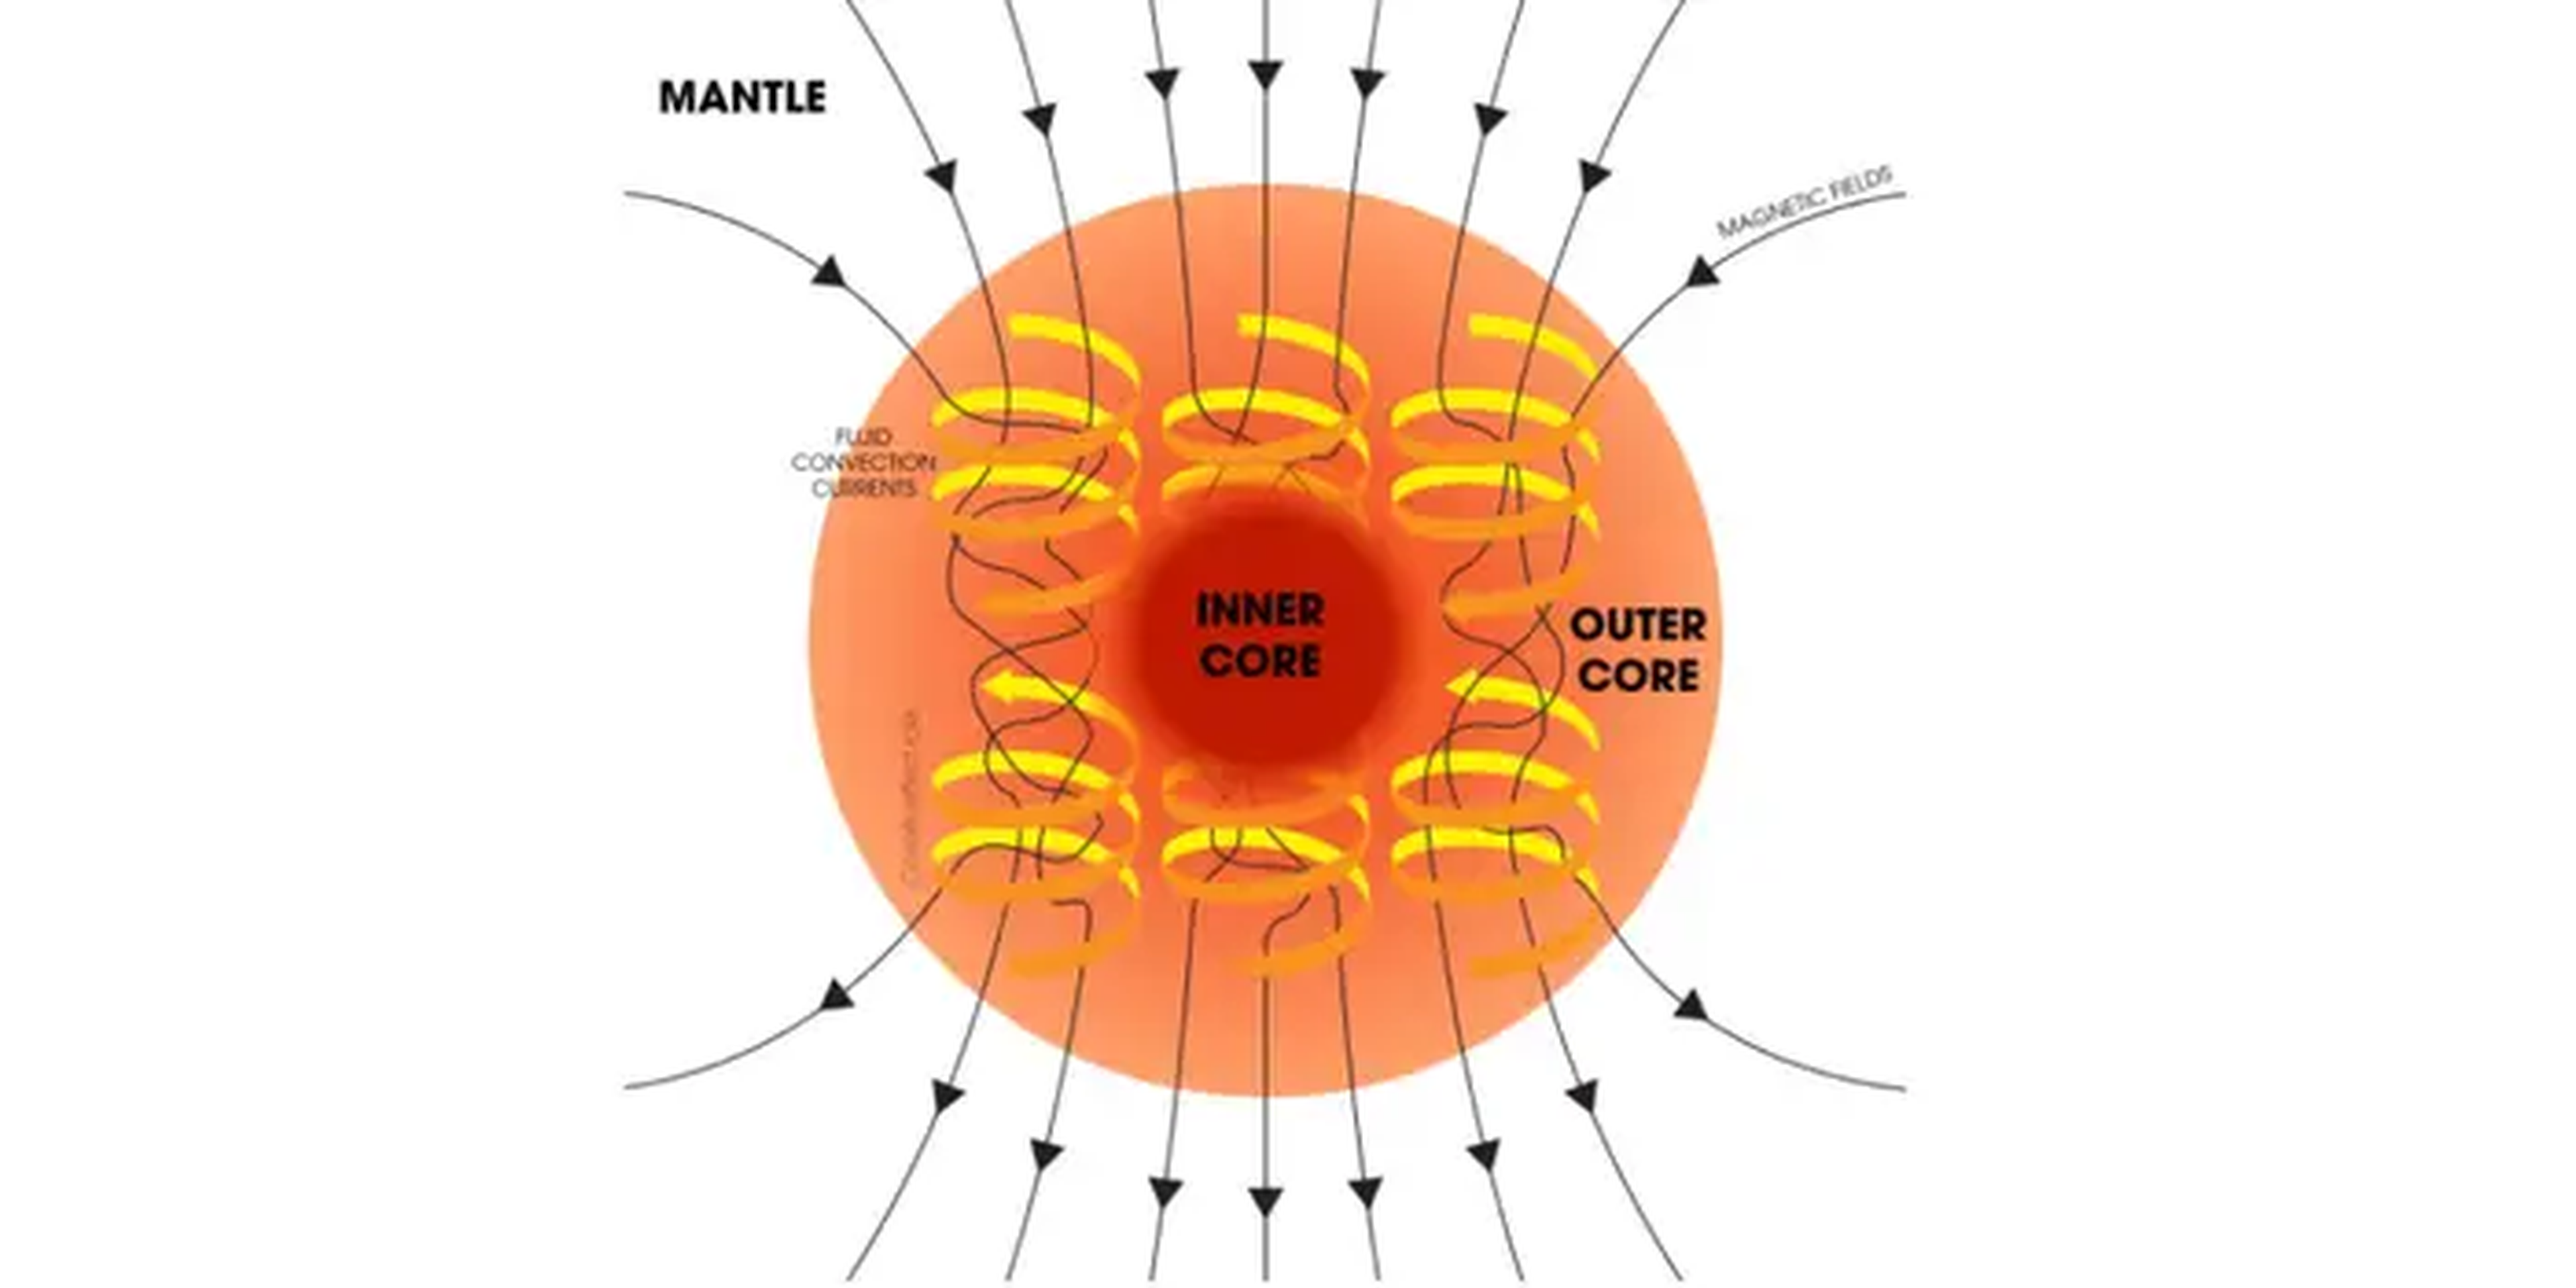 Un diagrama explica cómo el núcleo de la Tierra puede actuar como una dinamo gigante, creando los campos magnéticos de nuestro planeta.